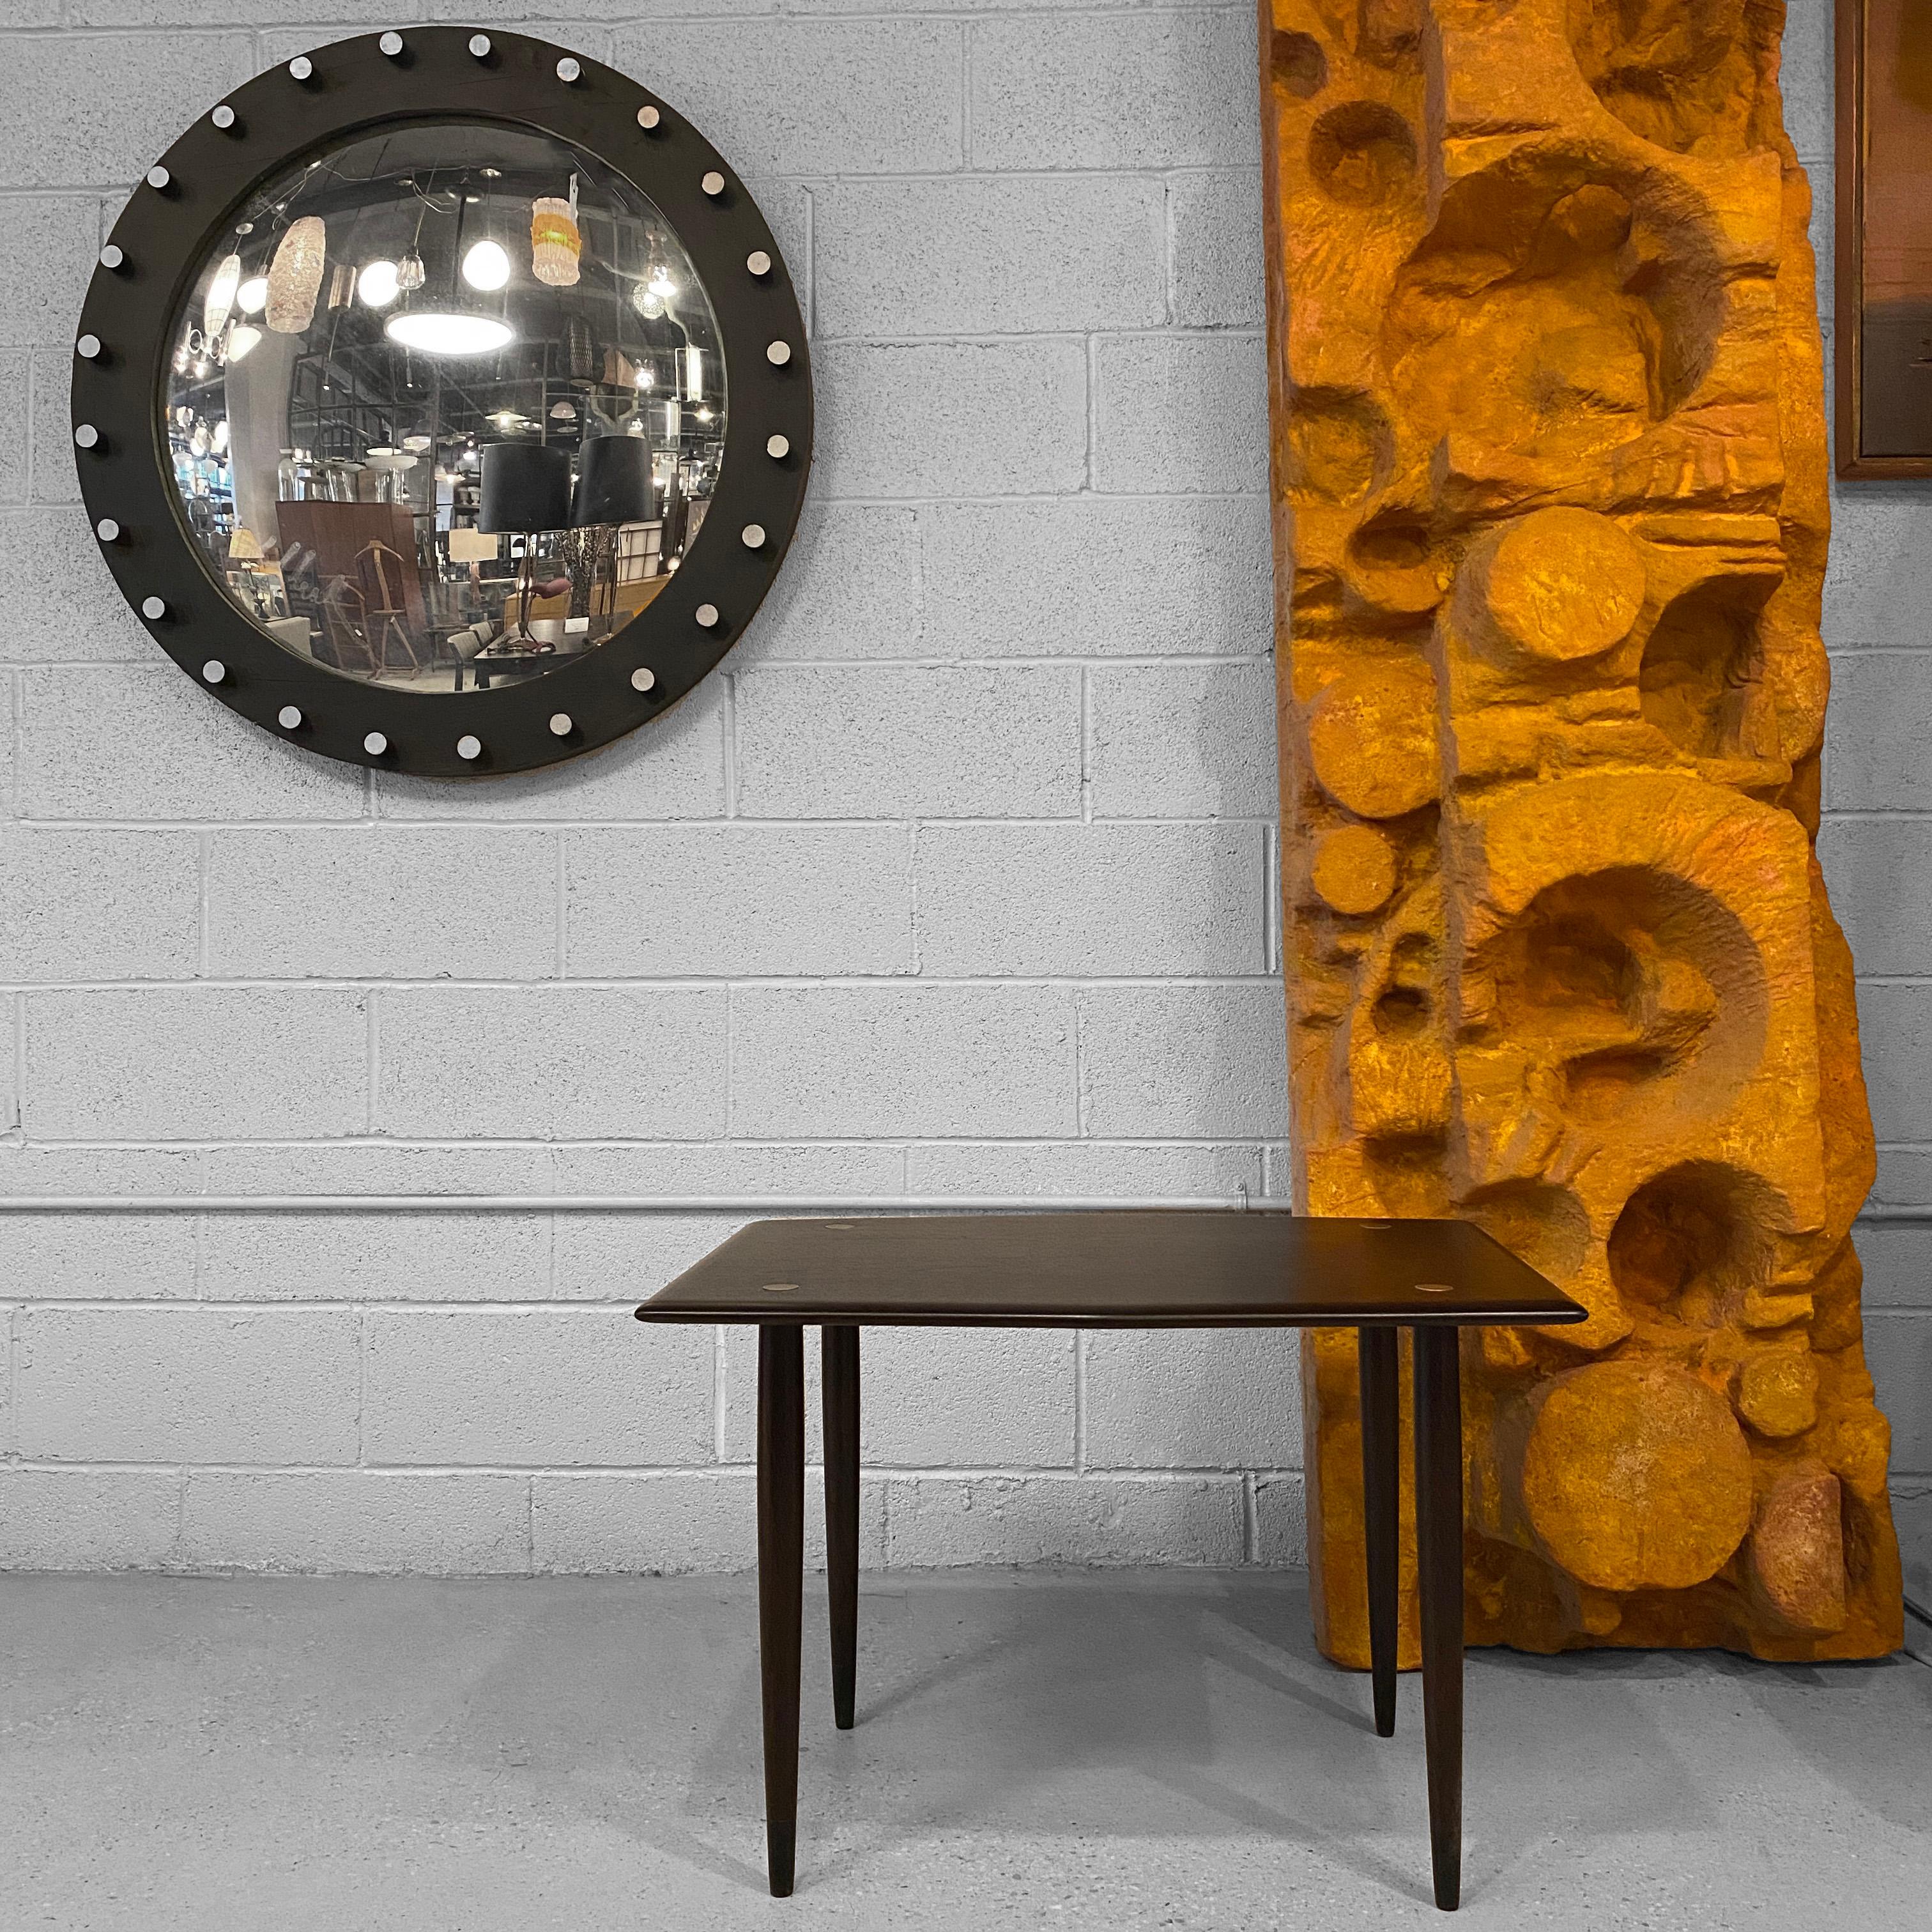 Scandinavian Modern Teak Side Table By Yngve Ekström For Dux In Good Condition For Sale In Brooklyn, NY